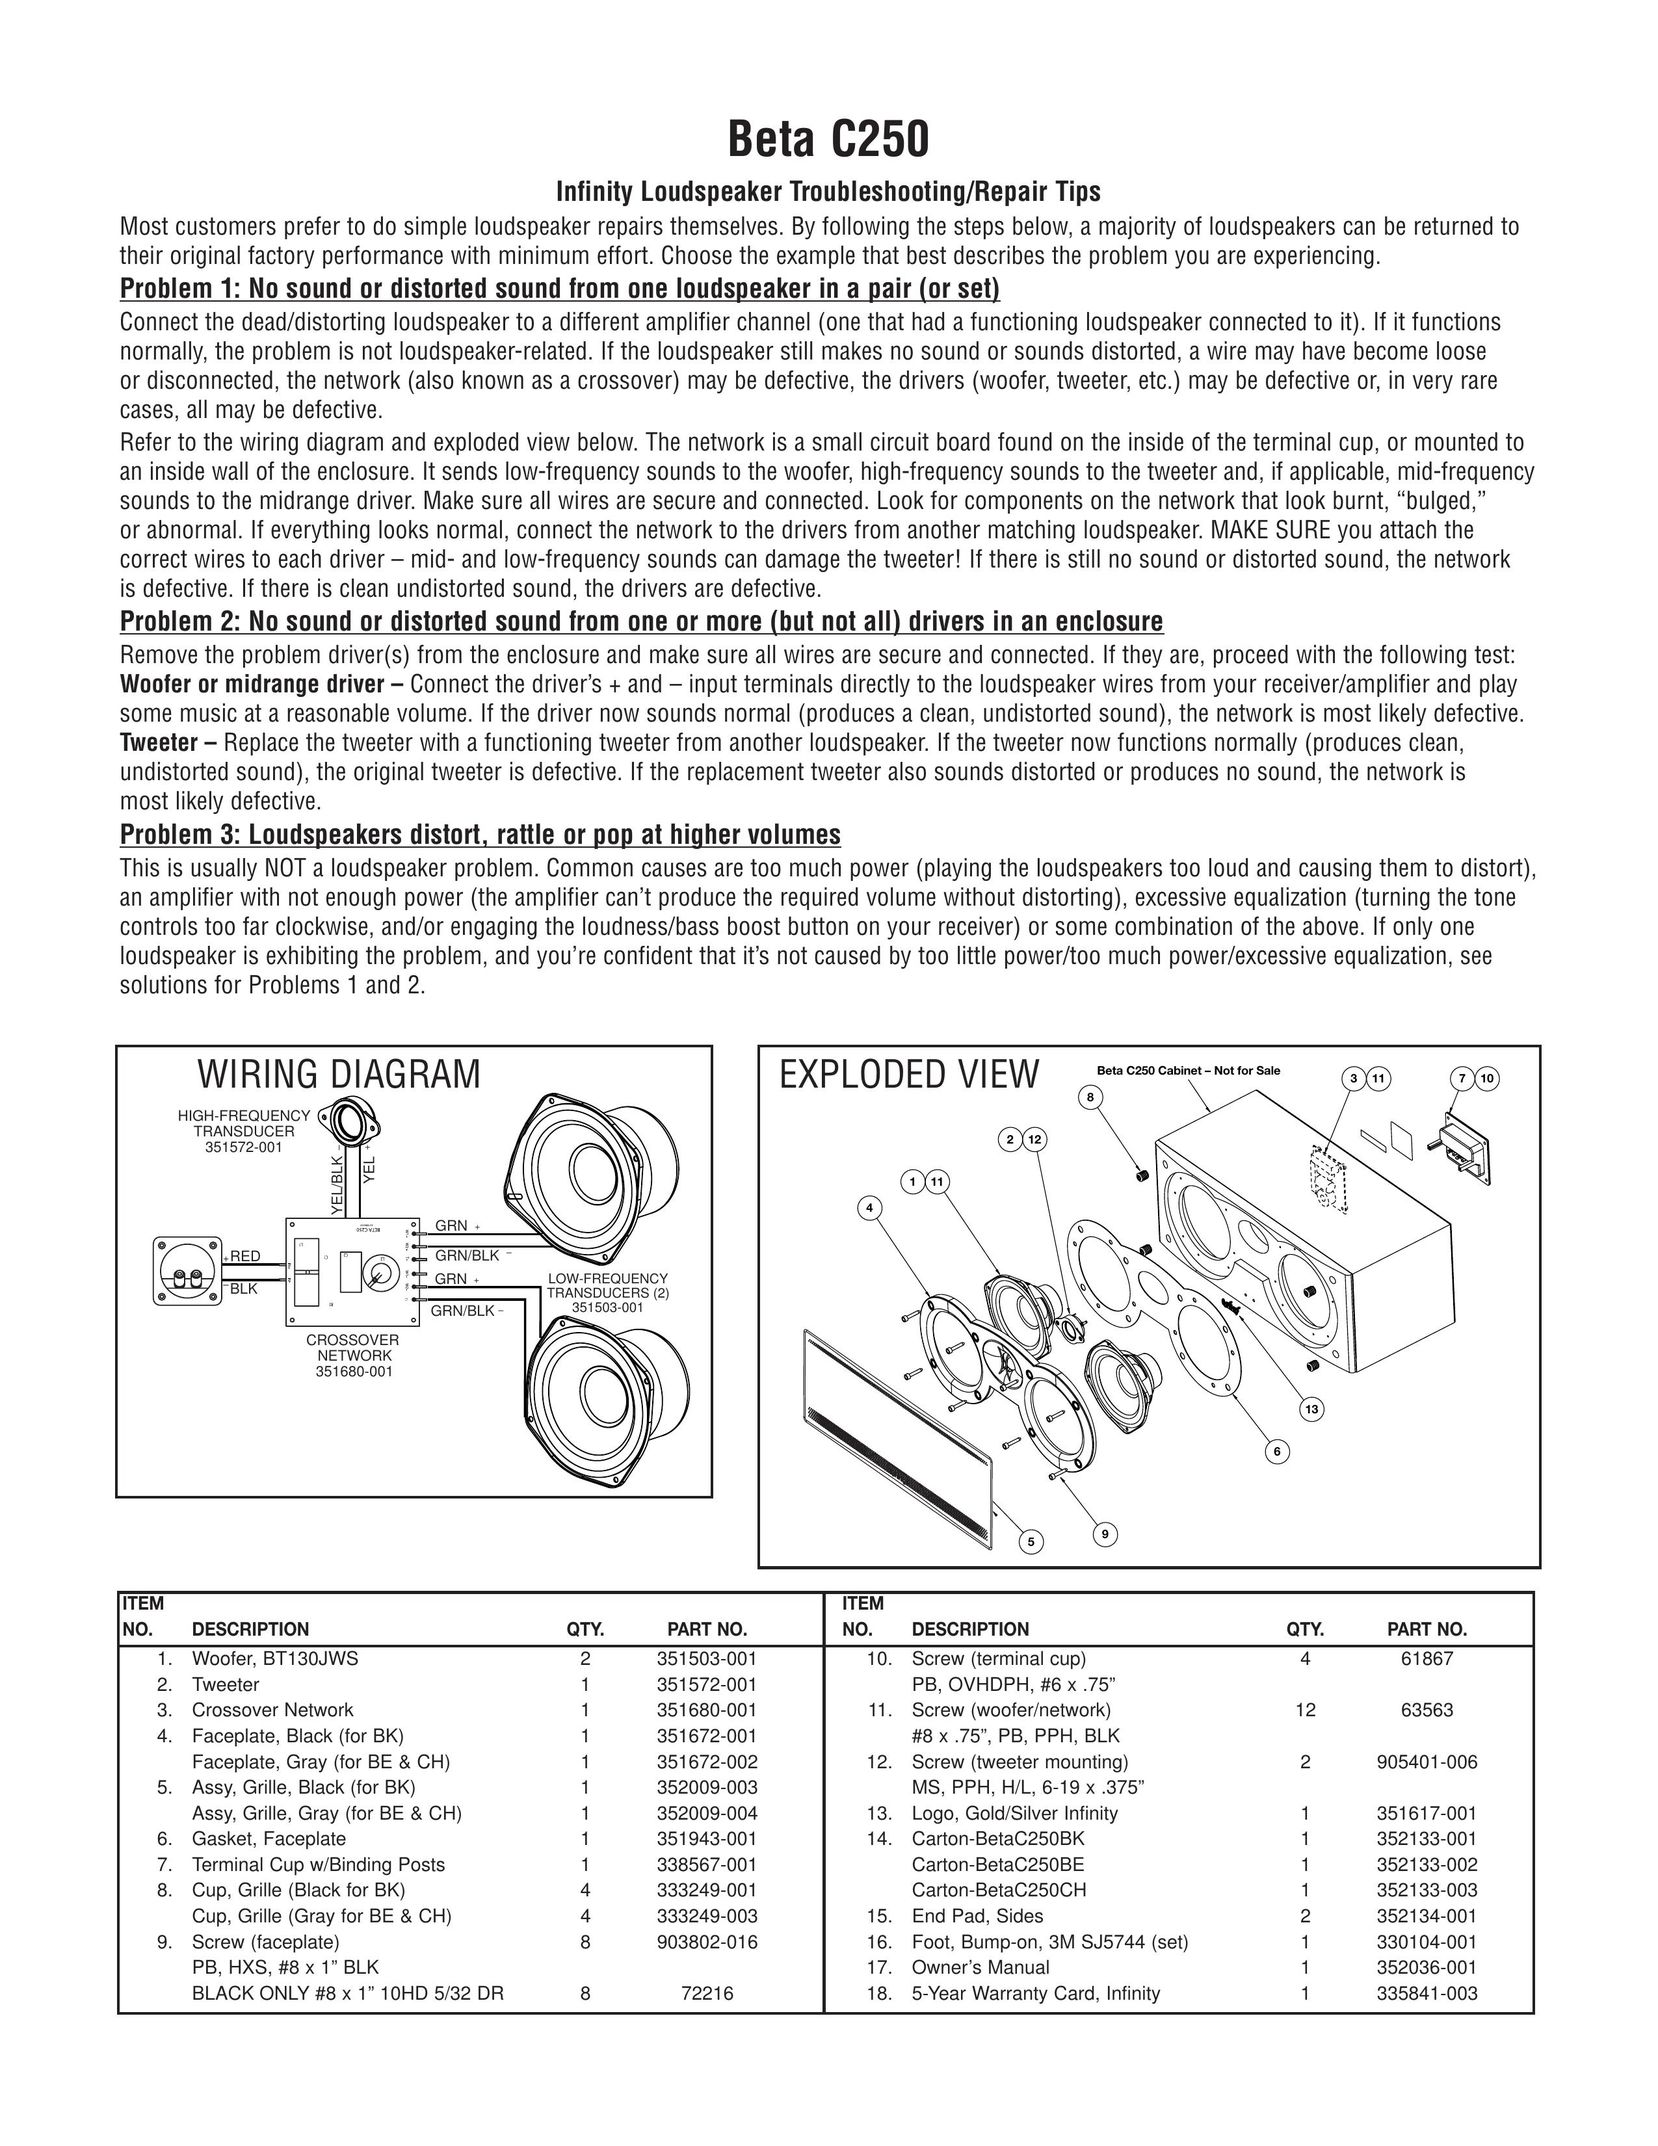 Infiniti Beta C250 Speaker User Manual